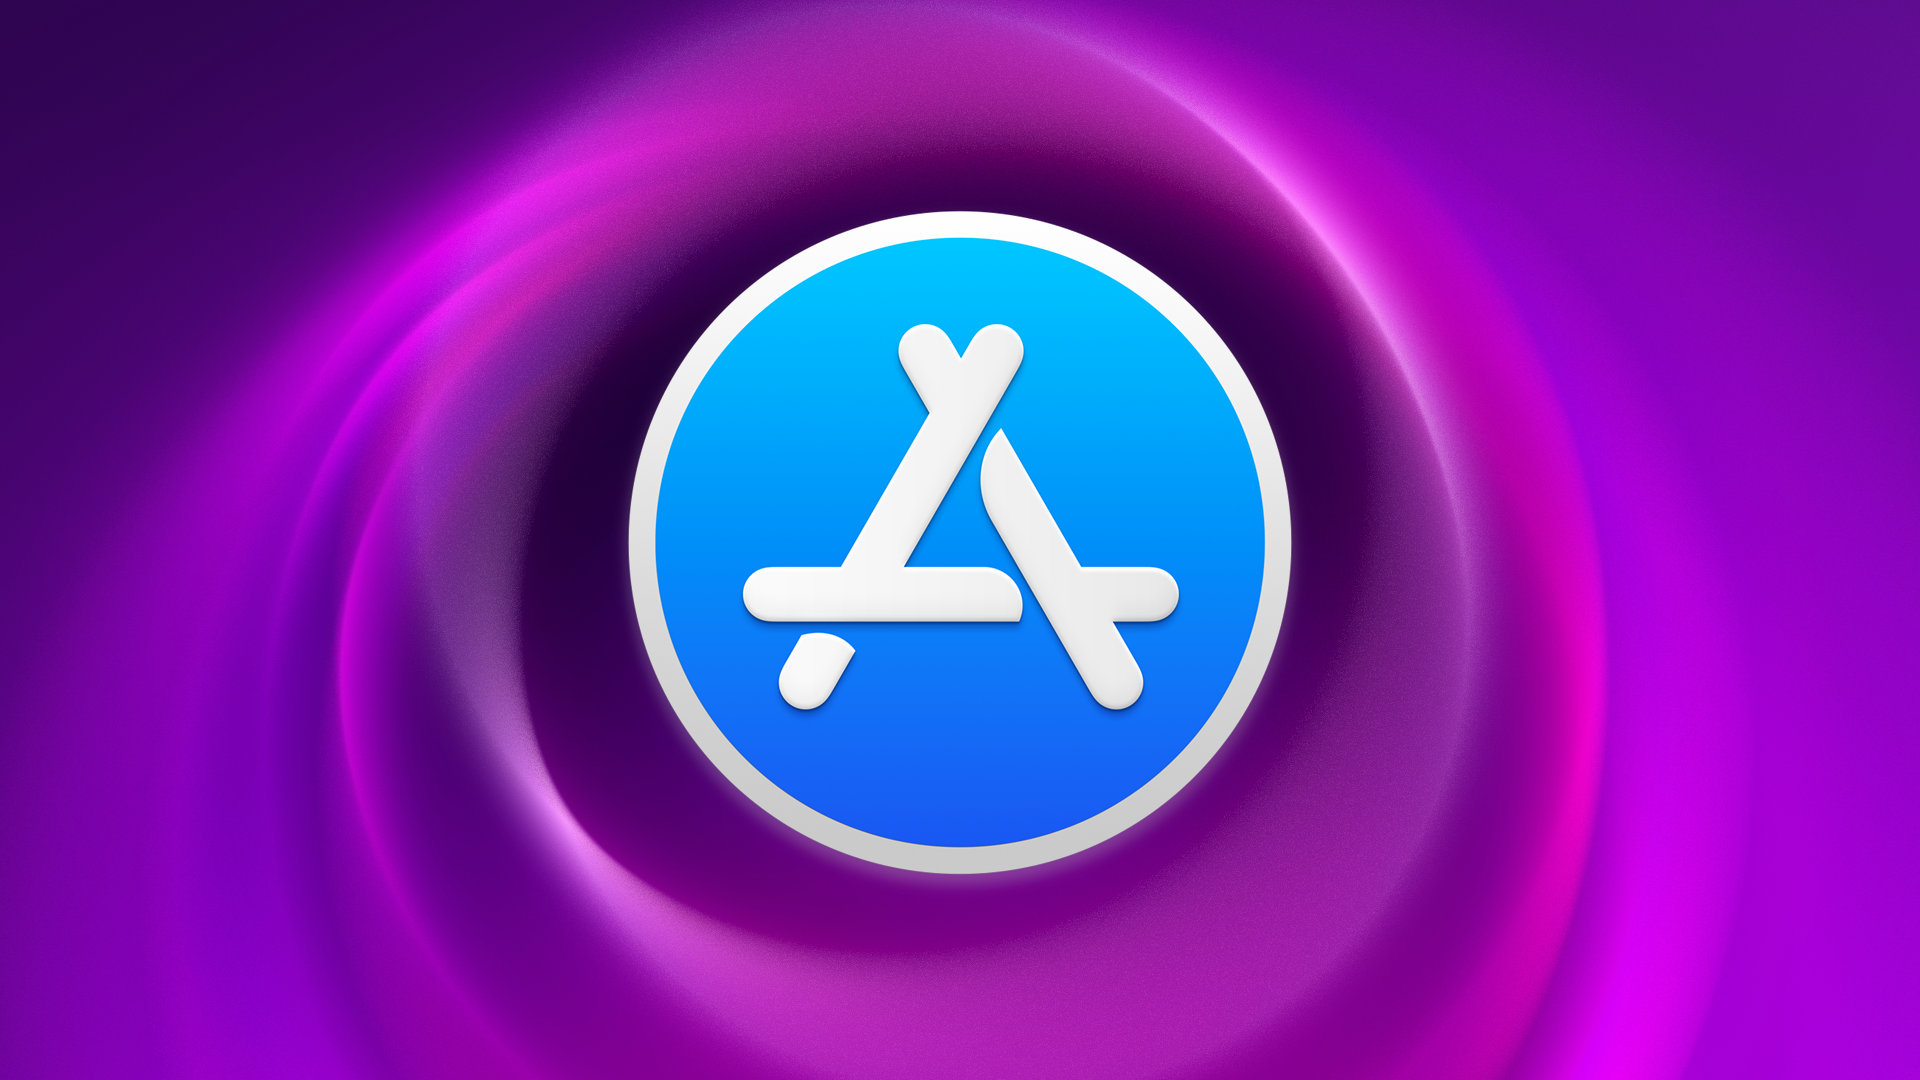 Forfaits • Résiliez l’abonnement à une appli depuis macOS ou iOS